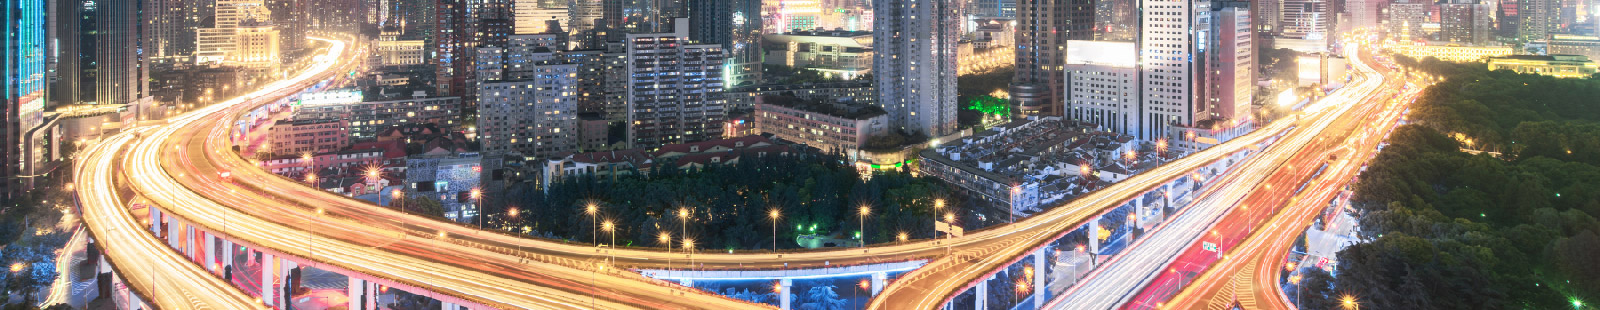 vista aérea de una interestatal por la noche en una gran ciudad